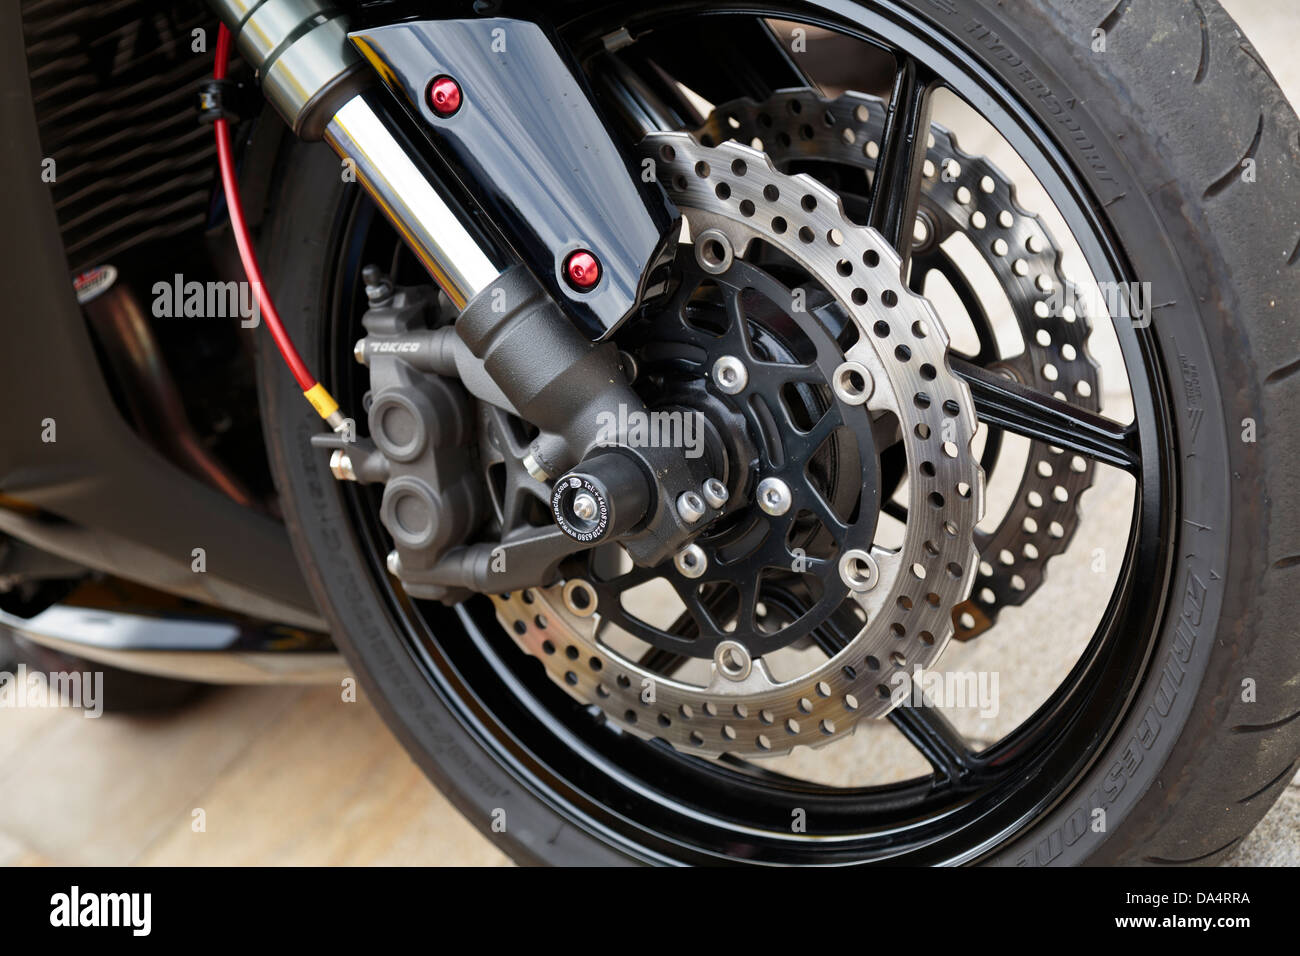 Nahaufnahme von einem Motorrad-Vorderrad mit Bridgestone Reifen  Stockfotografie - Alamy